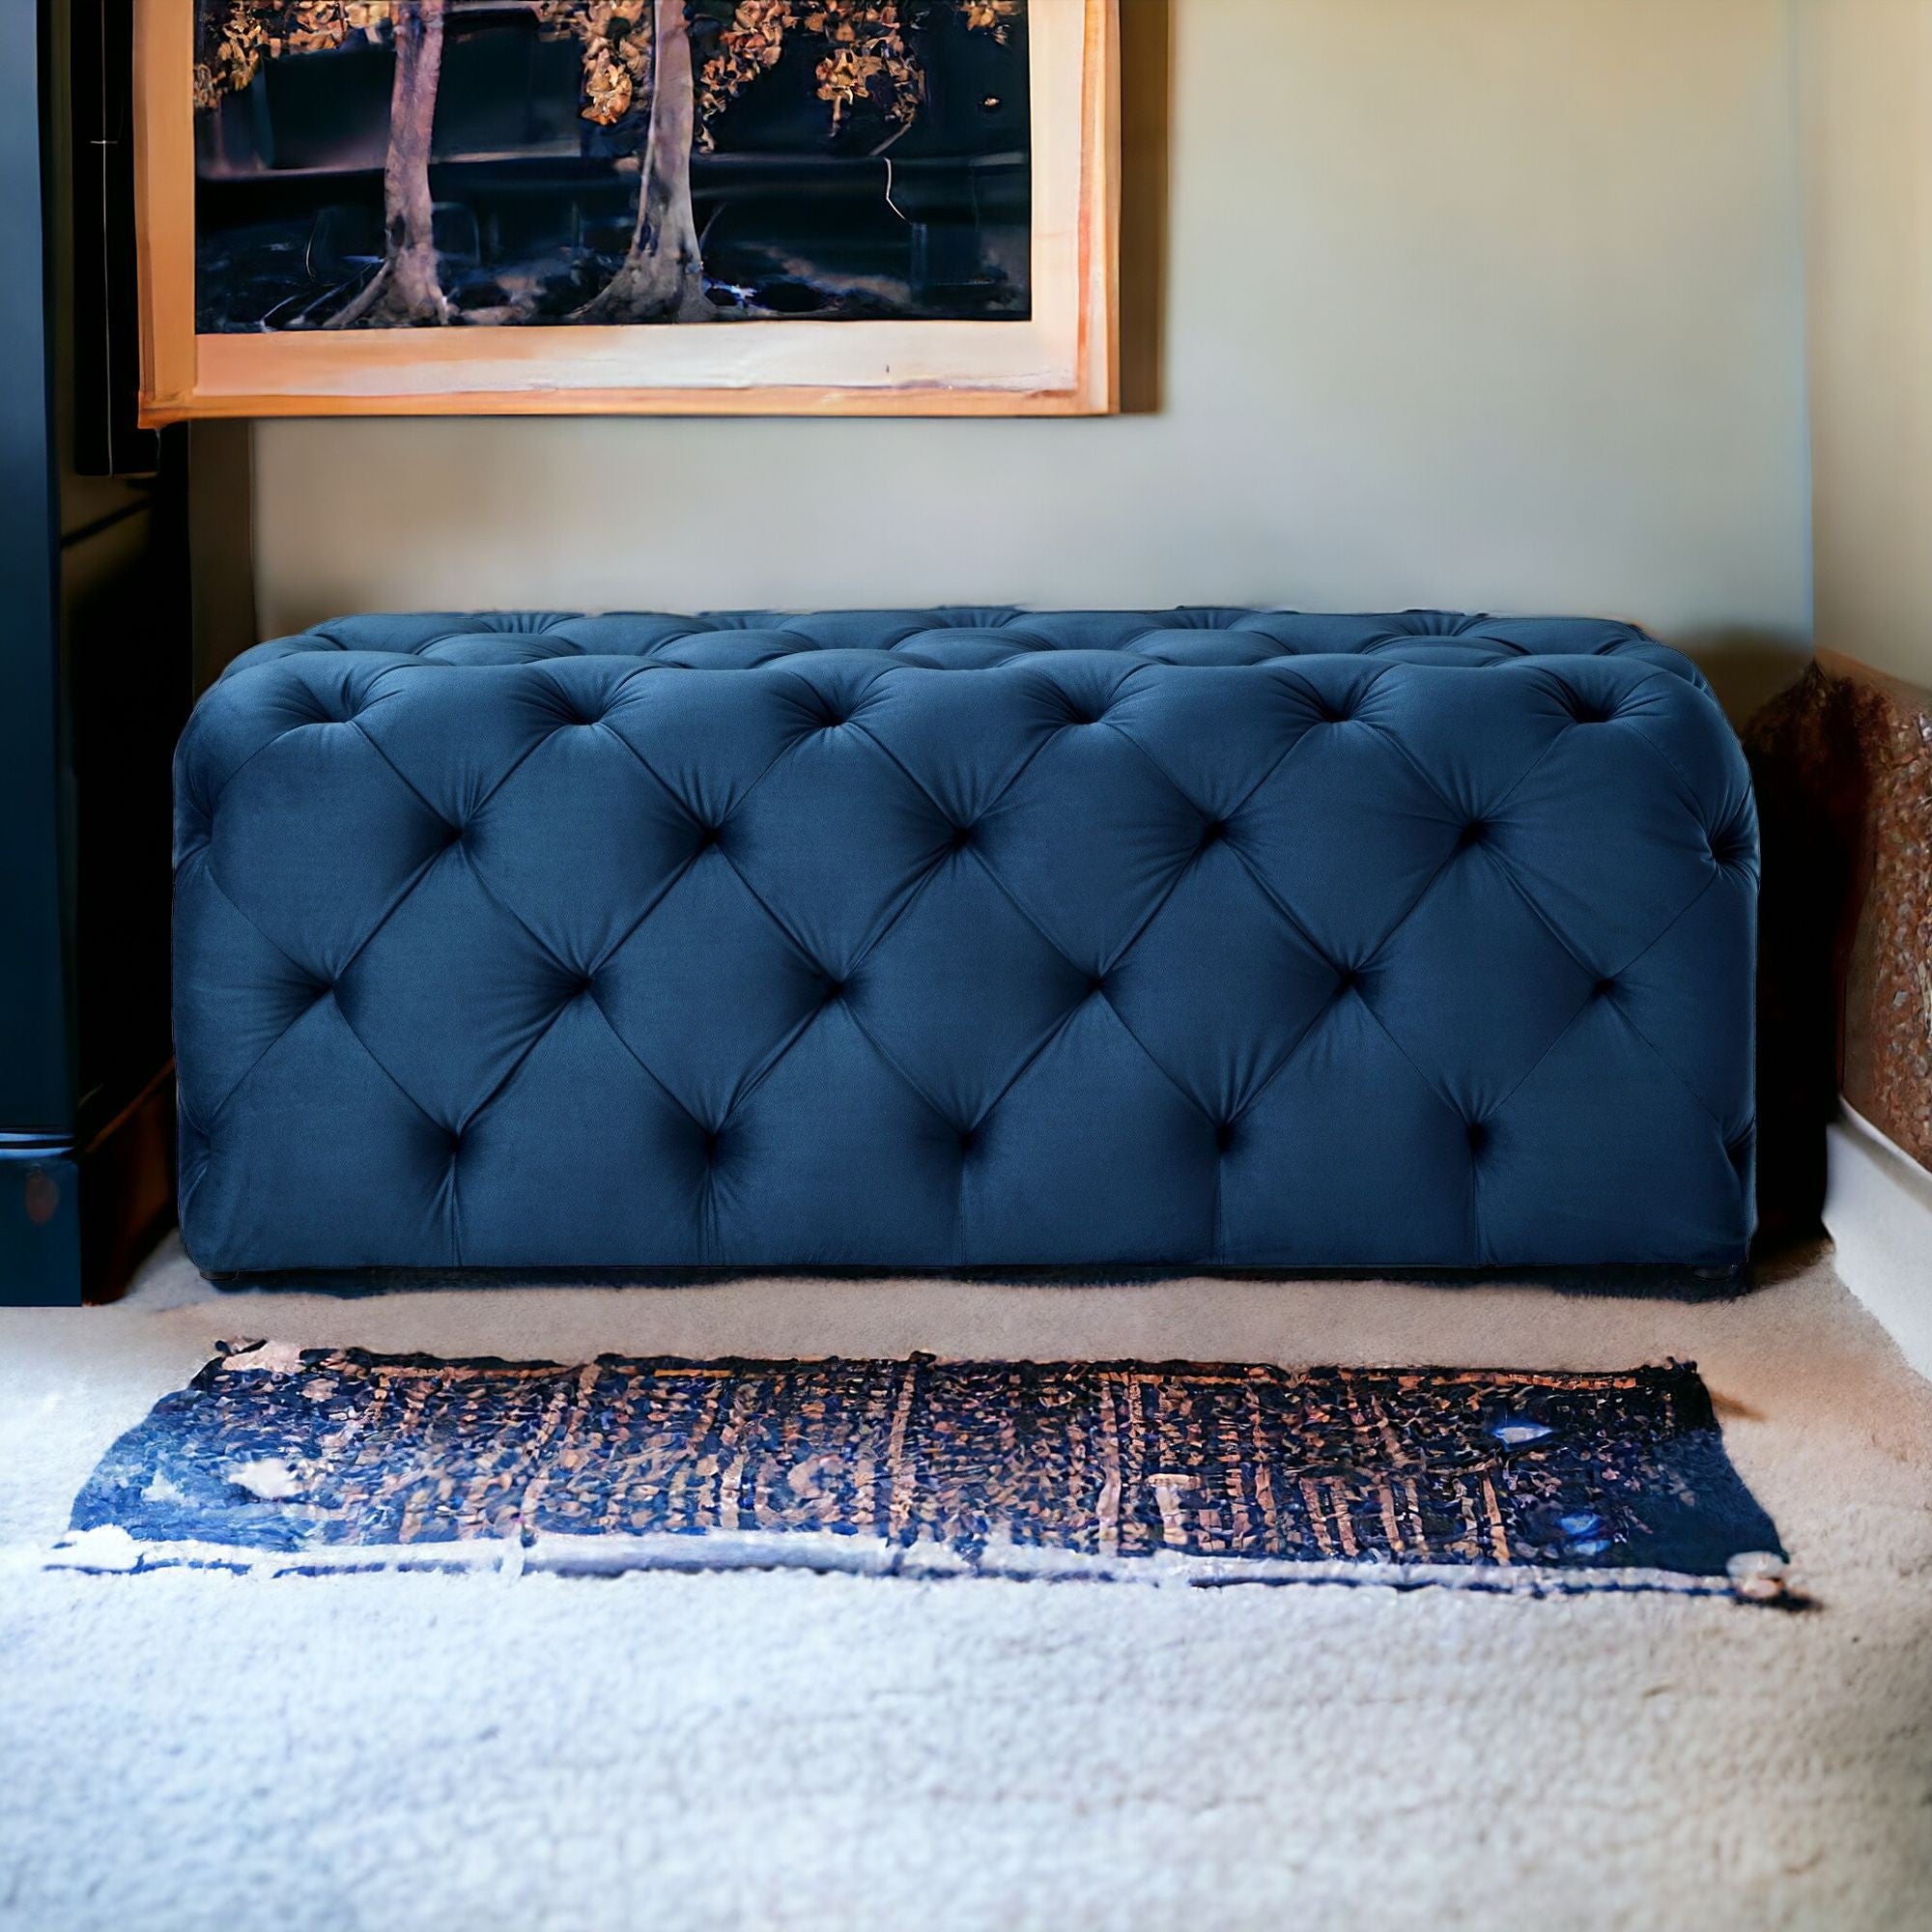 48" Light Gray And Black Upholstered Linen Bench